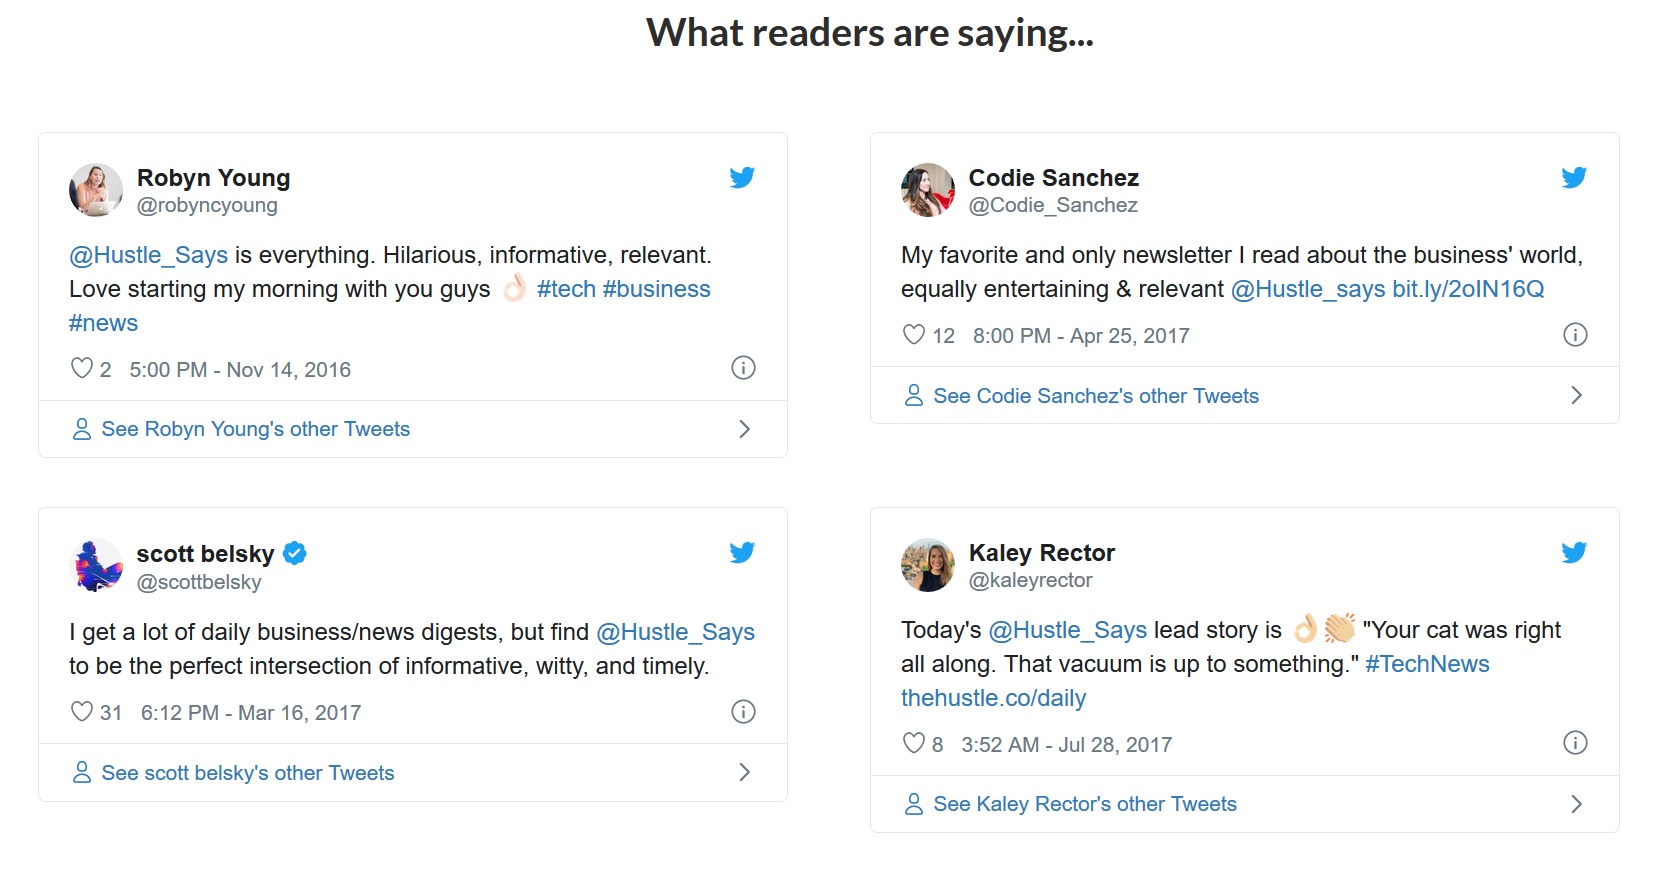 Readers’ tweets used as social proof